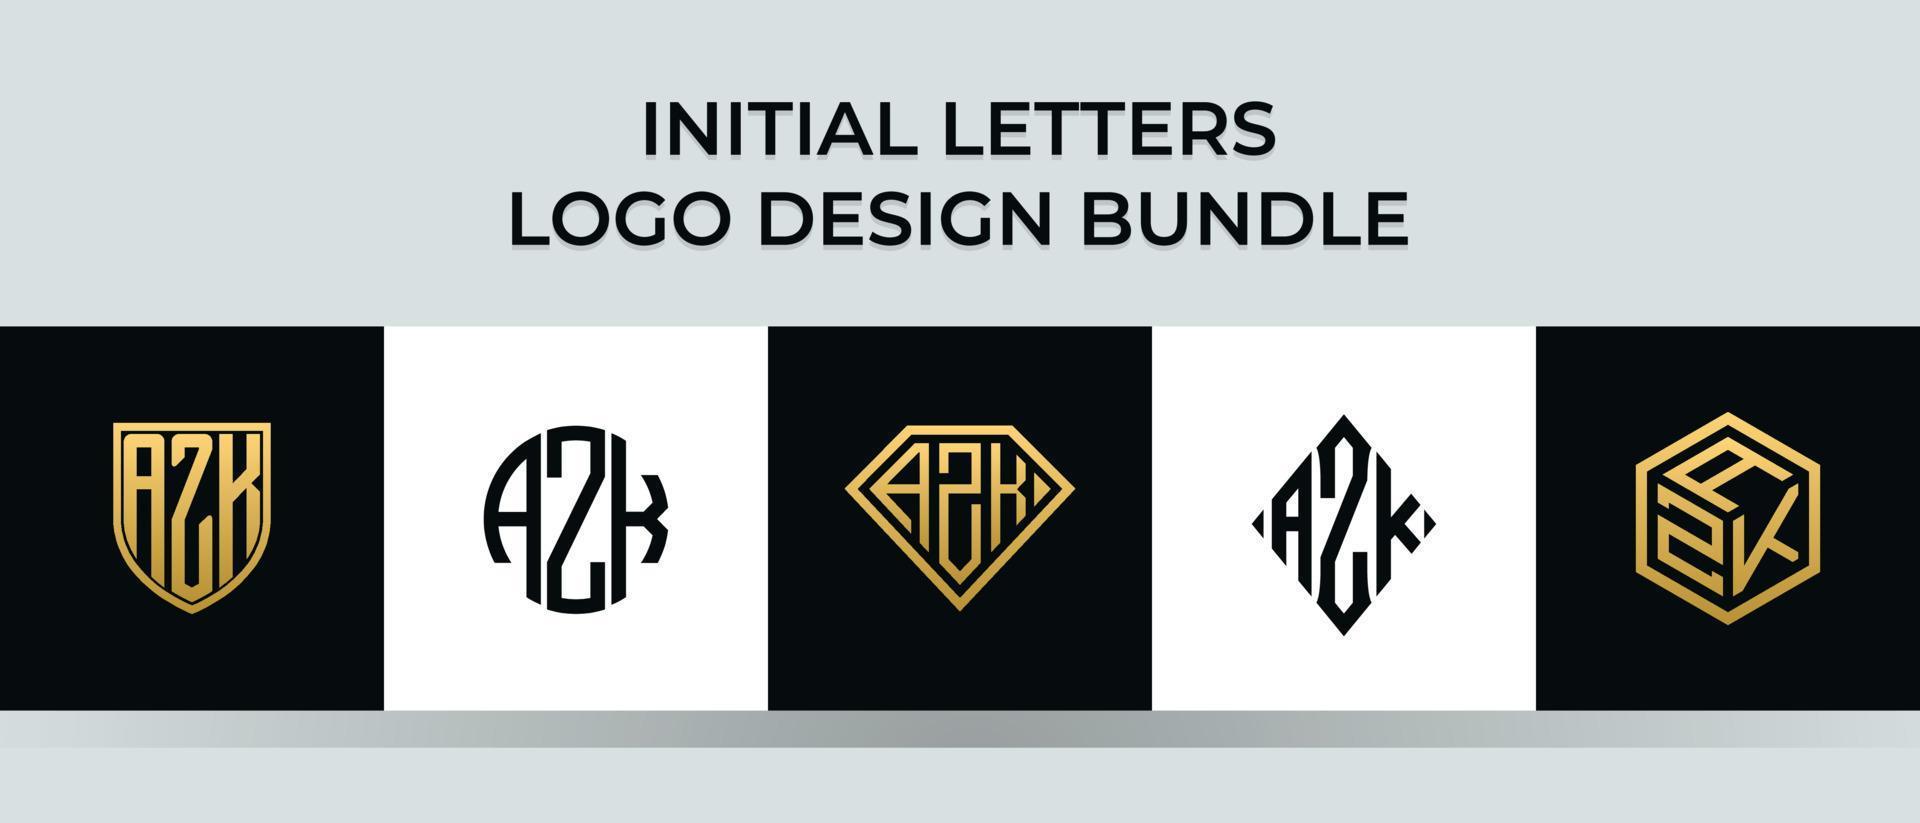 Initial letters AZK logo designs Bundle vector